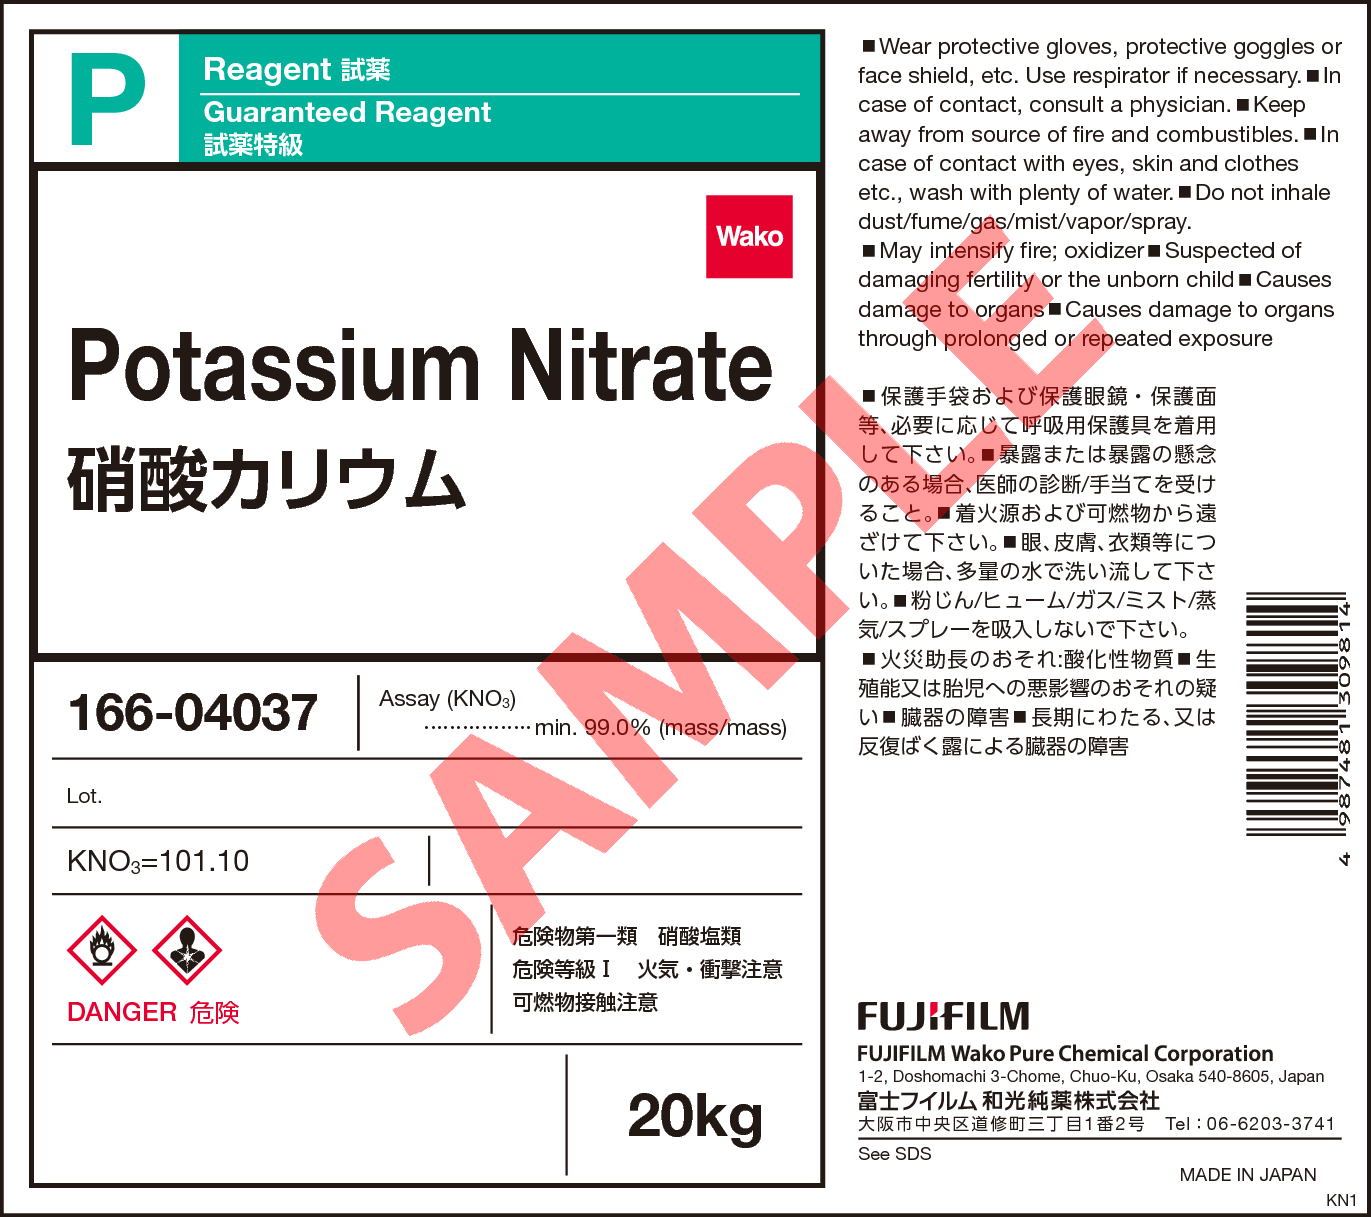 7757-79-1・硝酸カリウム・Potassium Nitrate・166-04037・166-04032 